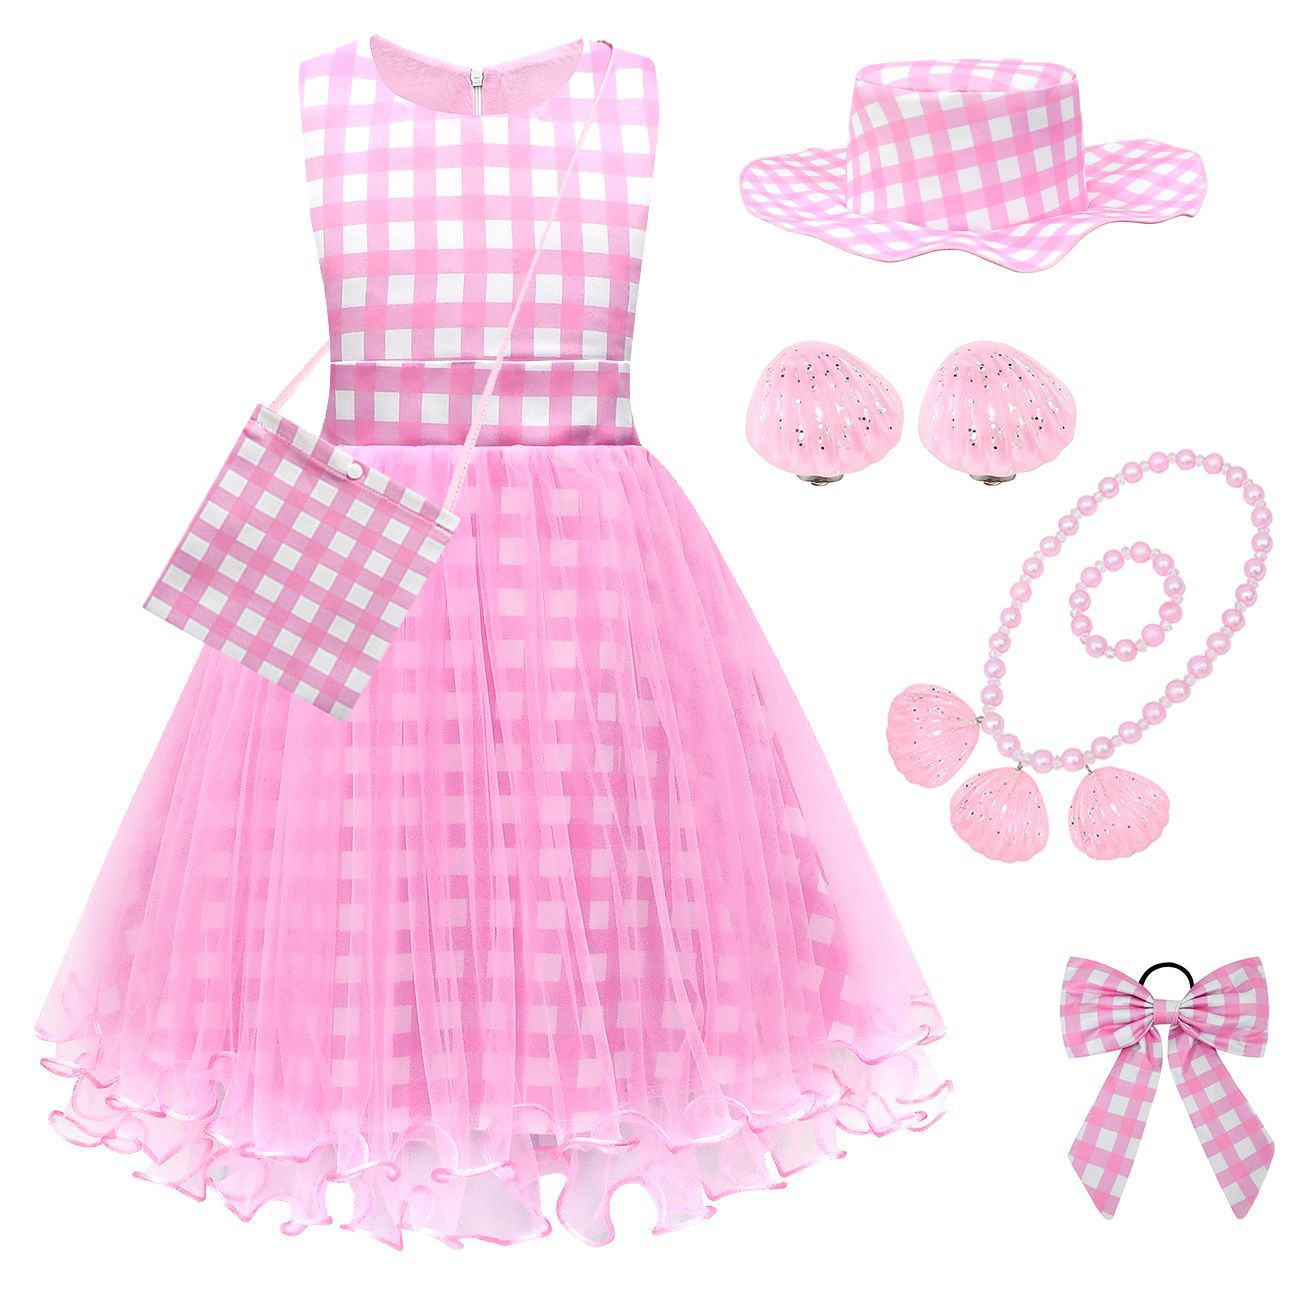 万圣节公主裙女童cosplay芭比乐园粉红吊带连衣裙梦幻表演礼服裙